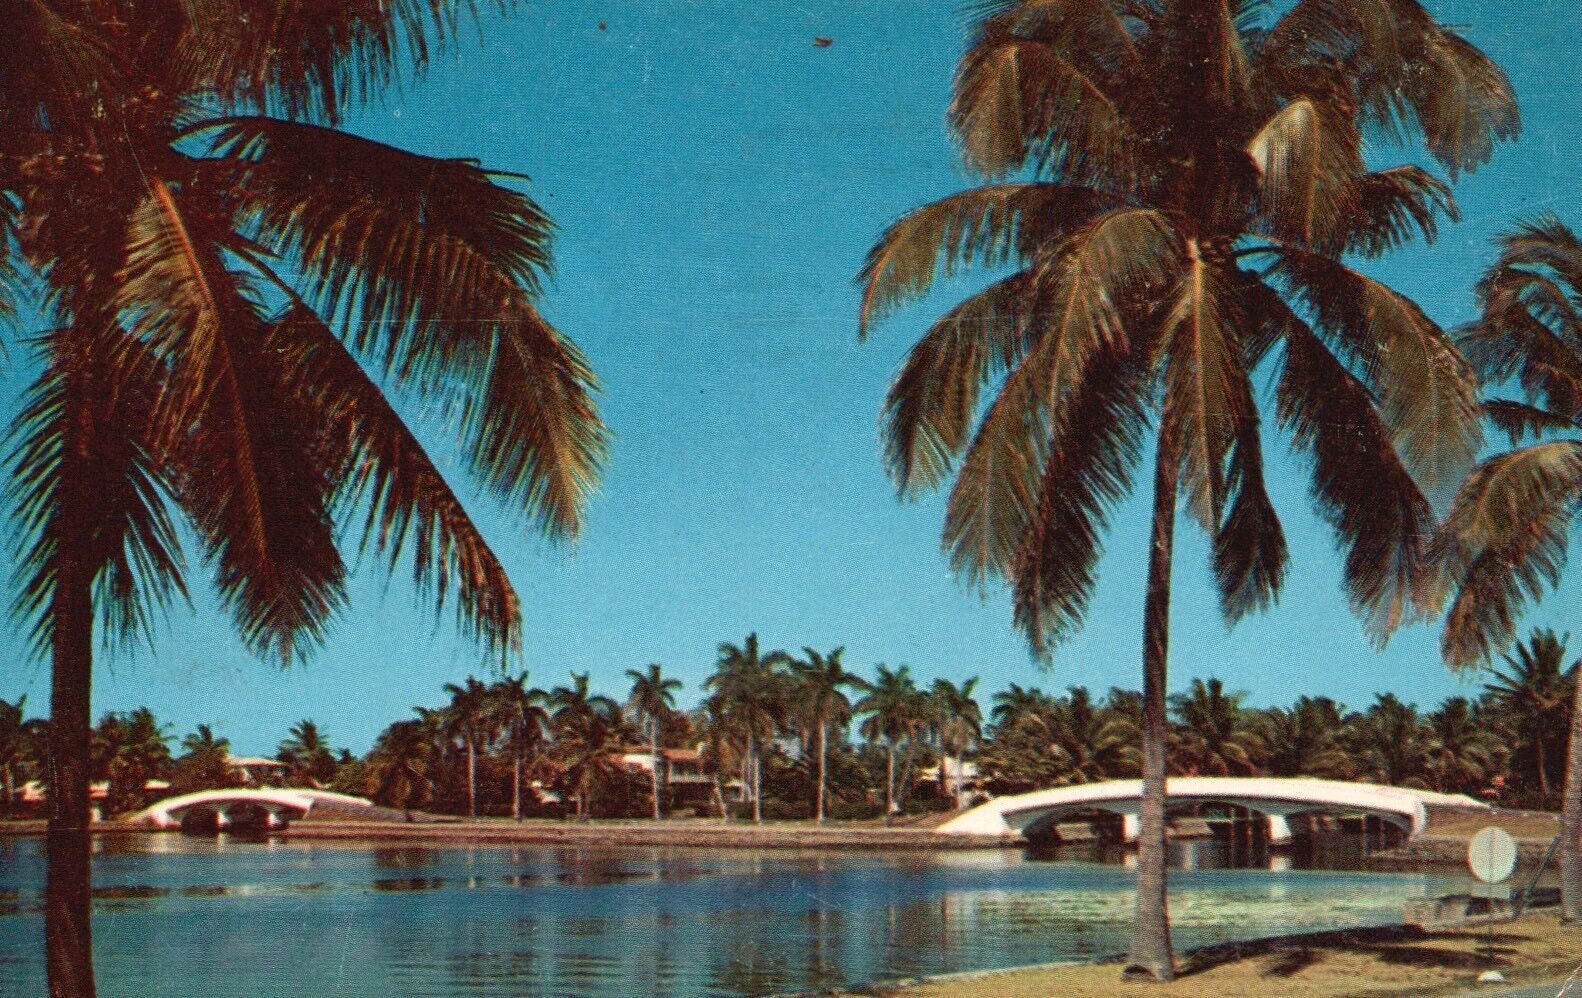 Postcard FL Fort Lauderdale Arched Bridges Span Waterways 1958 Vintage PC b8685